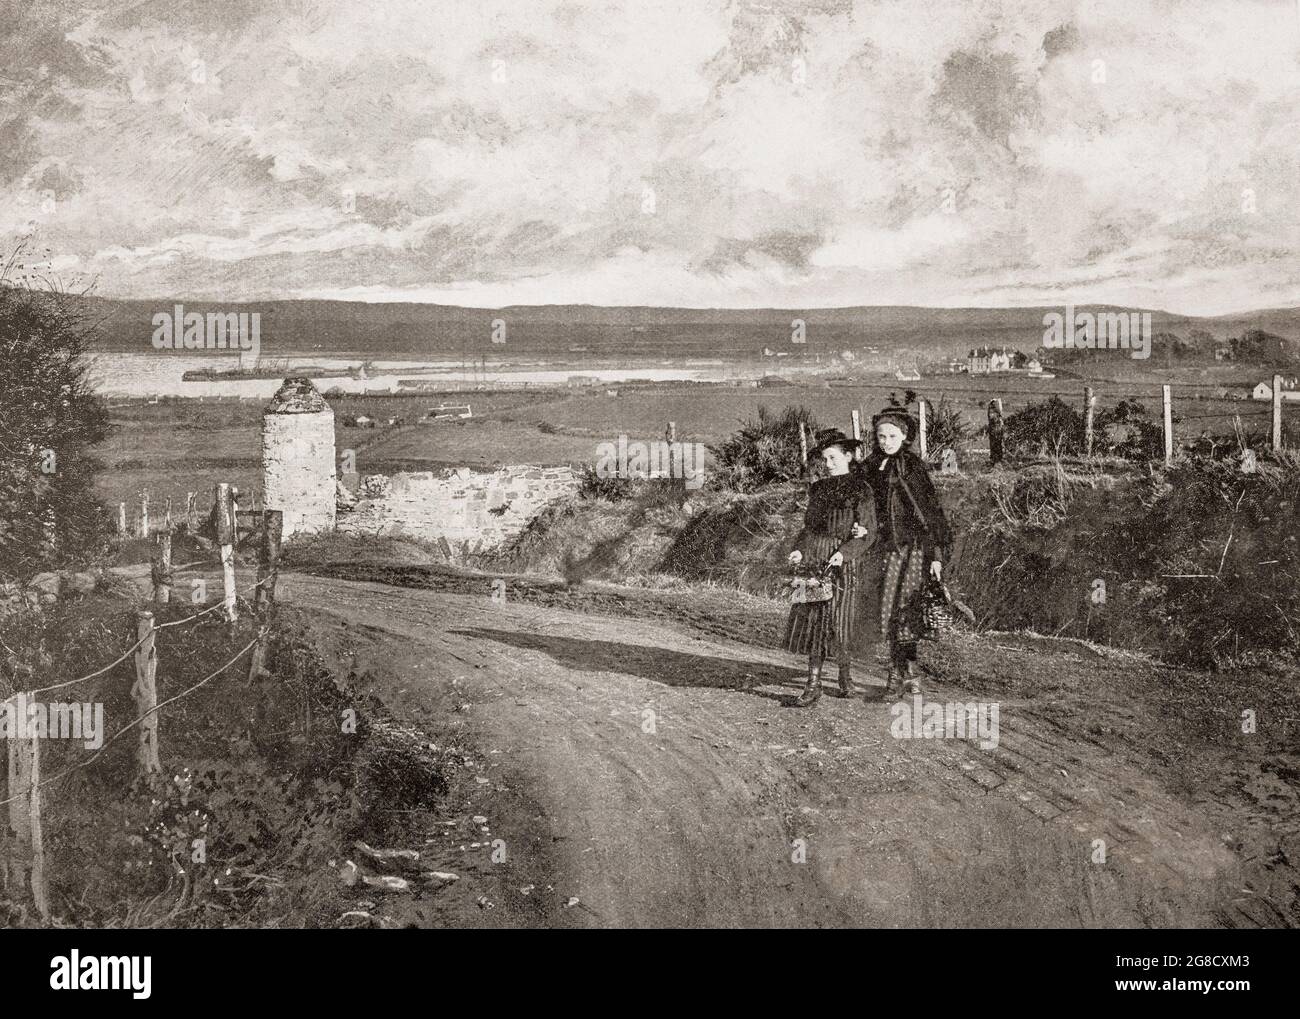 Una vista de finales del siglo 19th de la distancia Stranraer aka el Toon, una ciudad en Dumfries y Galloway, Escocia de Gallowhill con dos mujeres jóvenes de moda. Anteriormente era un puerto de ferries, que conectaba Escocia con Belfast y Larne en Irlanda del Norte. Foto de stock